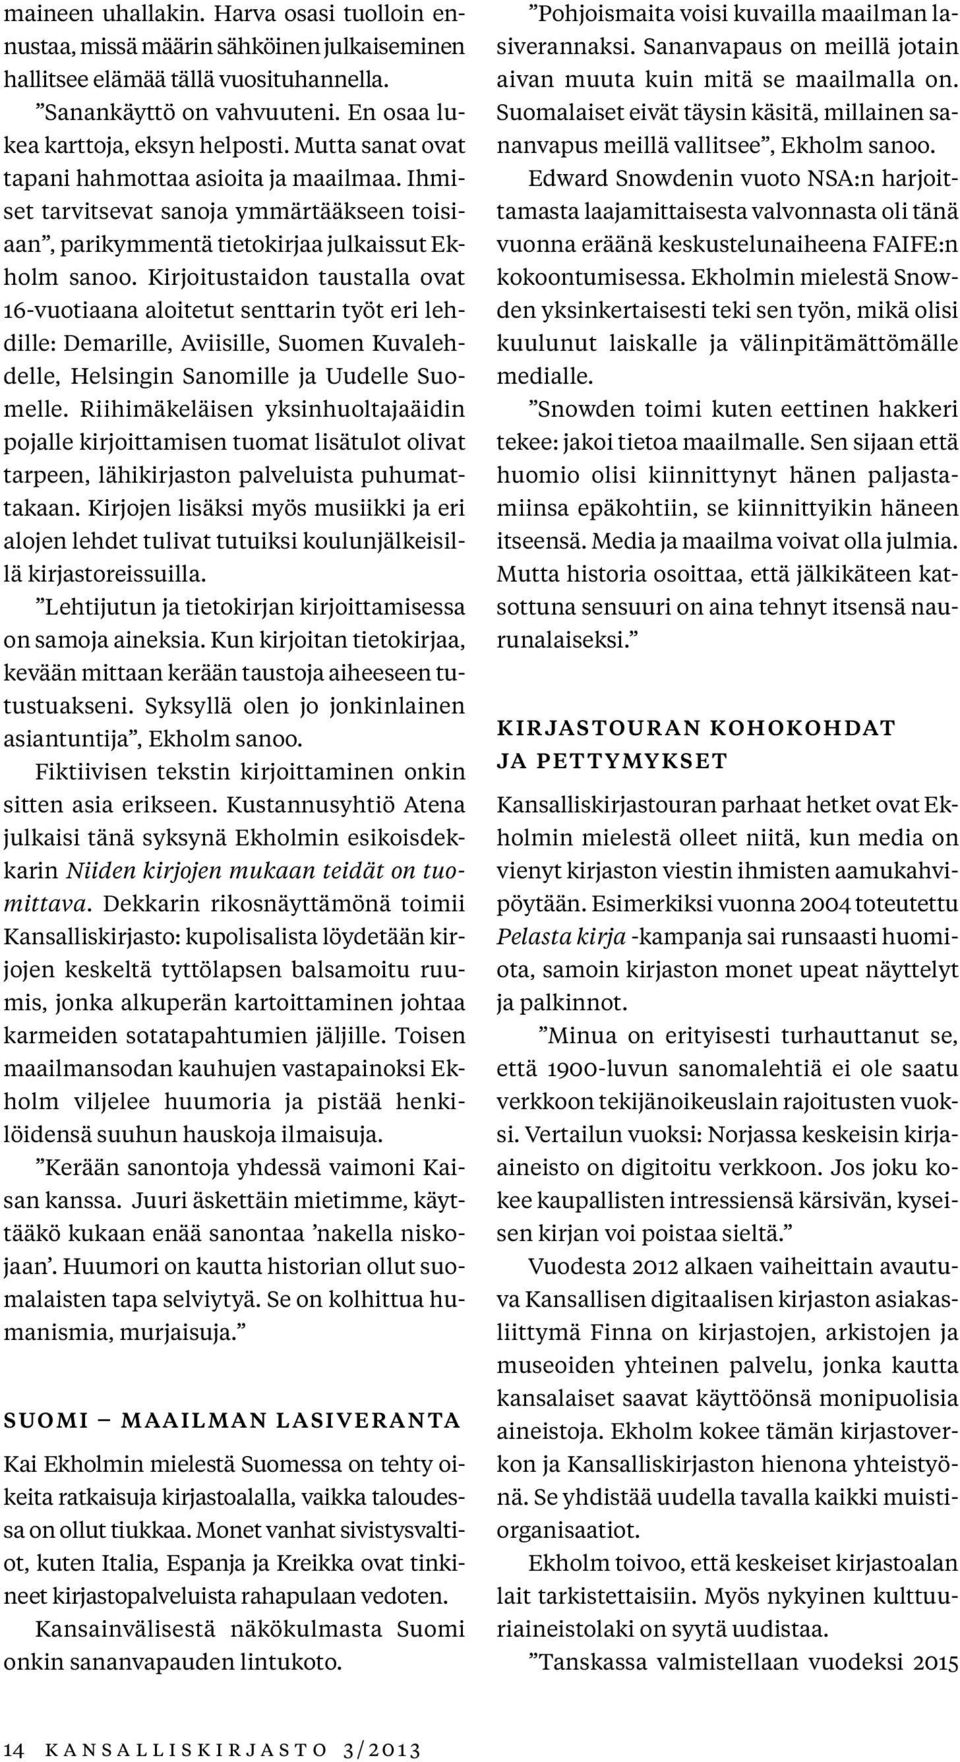 Kirjoitustaidon taustalla ovat 16-vuotiaana aloitetut senttarin työt eri lehdille: Demarille, Aviisille, Suomen Kuvalehdelle, Helsingin Sanomille ja Uudelle Suomelle.